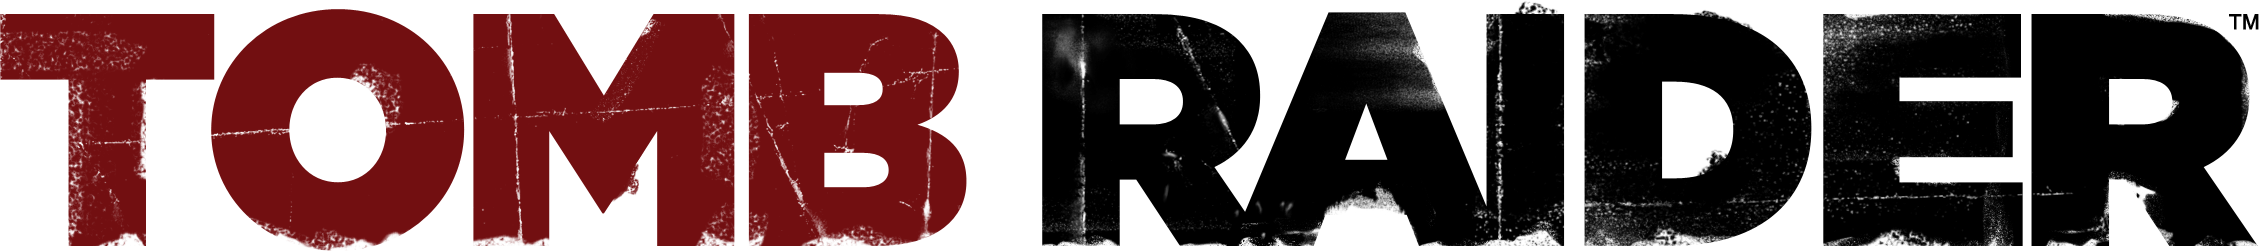 Logo Tomb Raider Cutout PNG